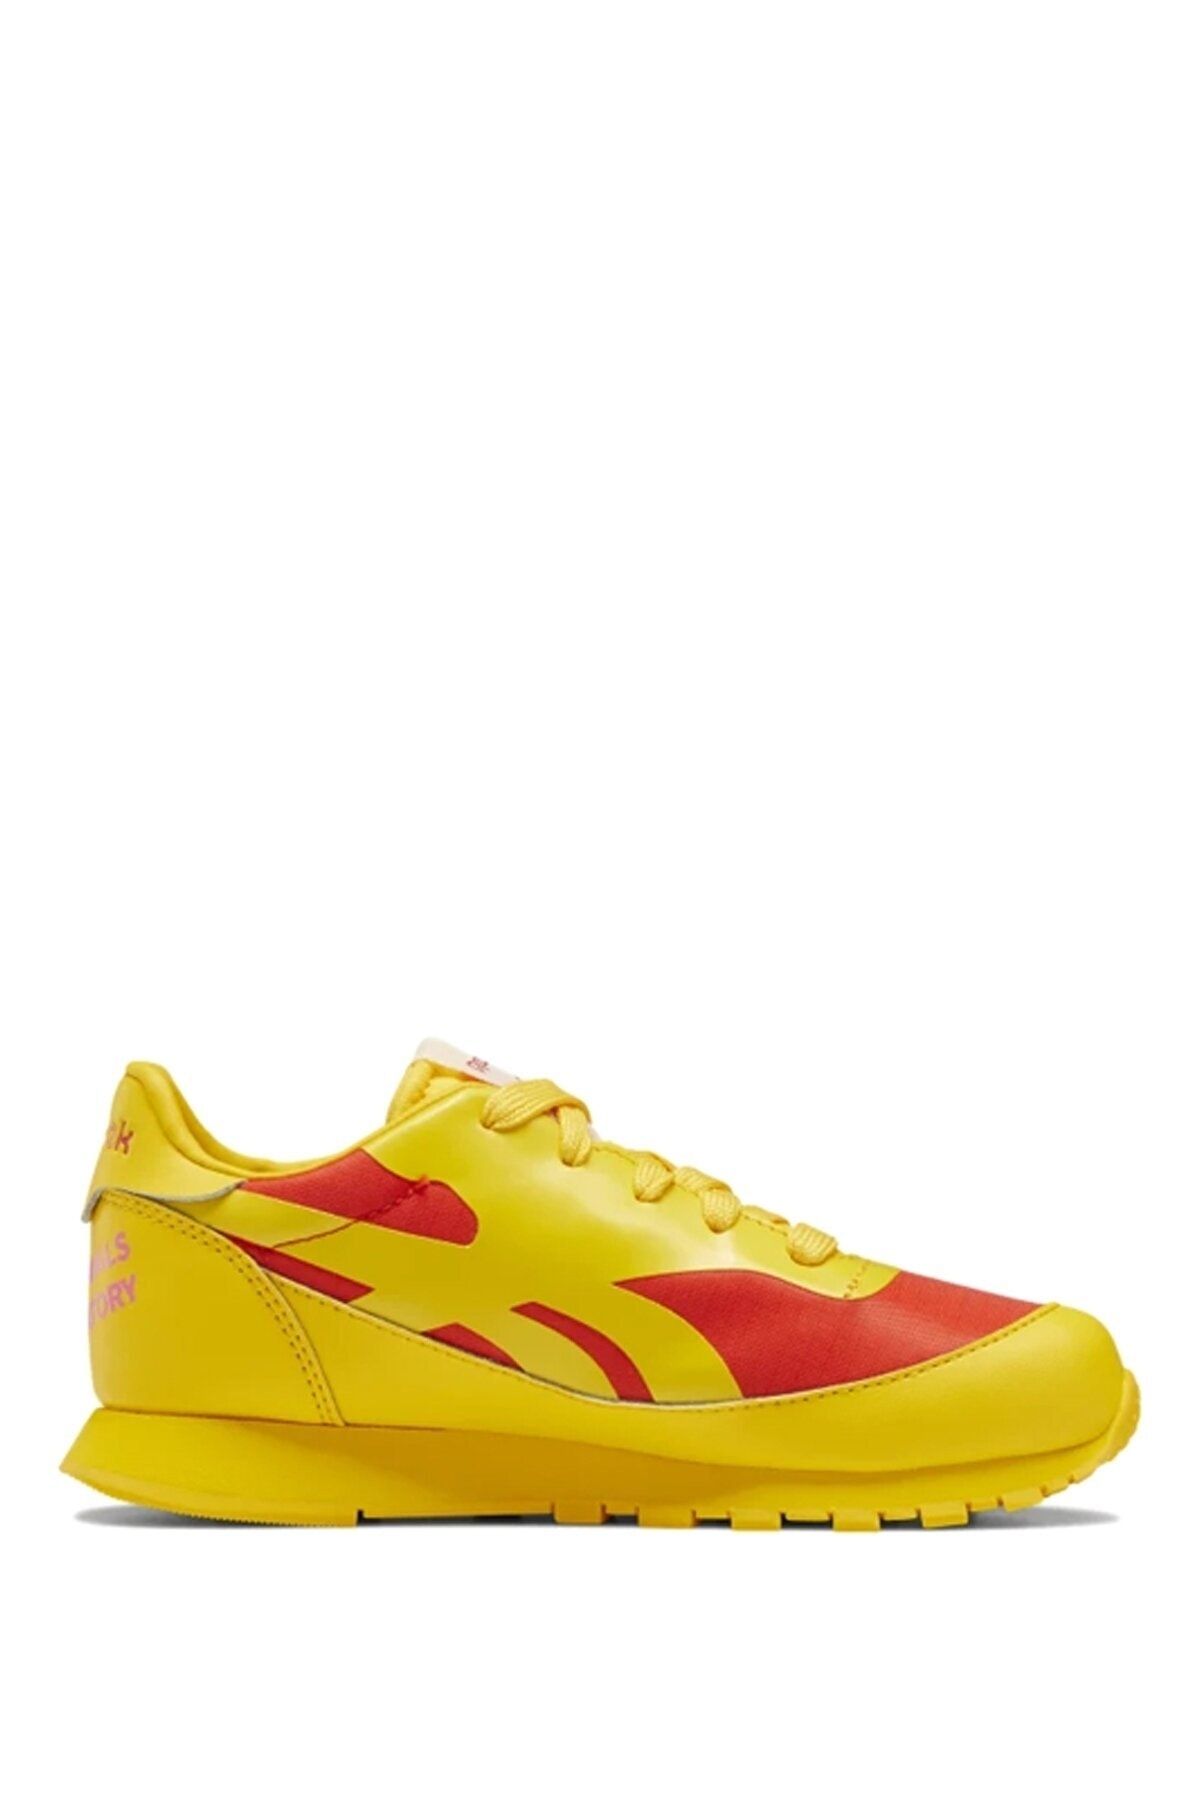 Reebok کفش ورزشی کلاسیک چرمی زرد یونیسکس